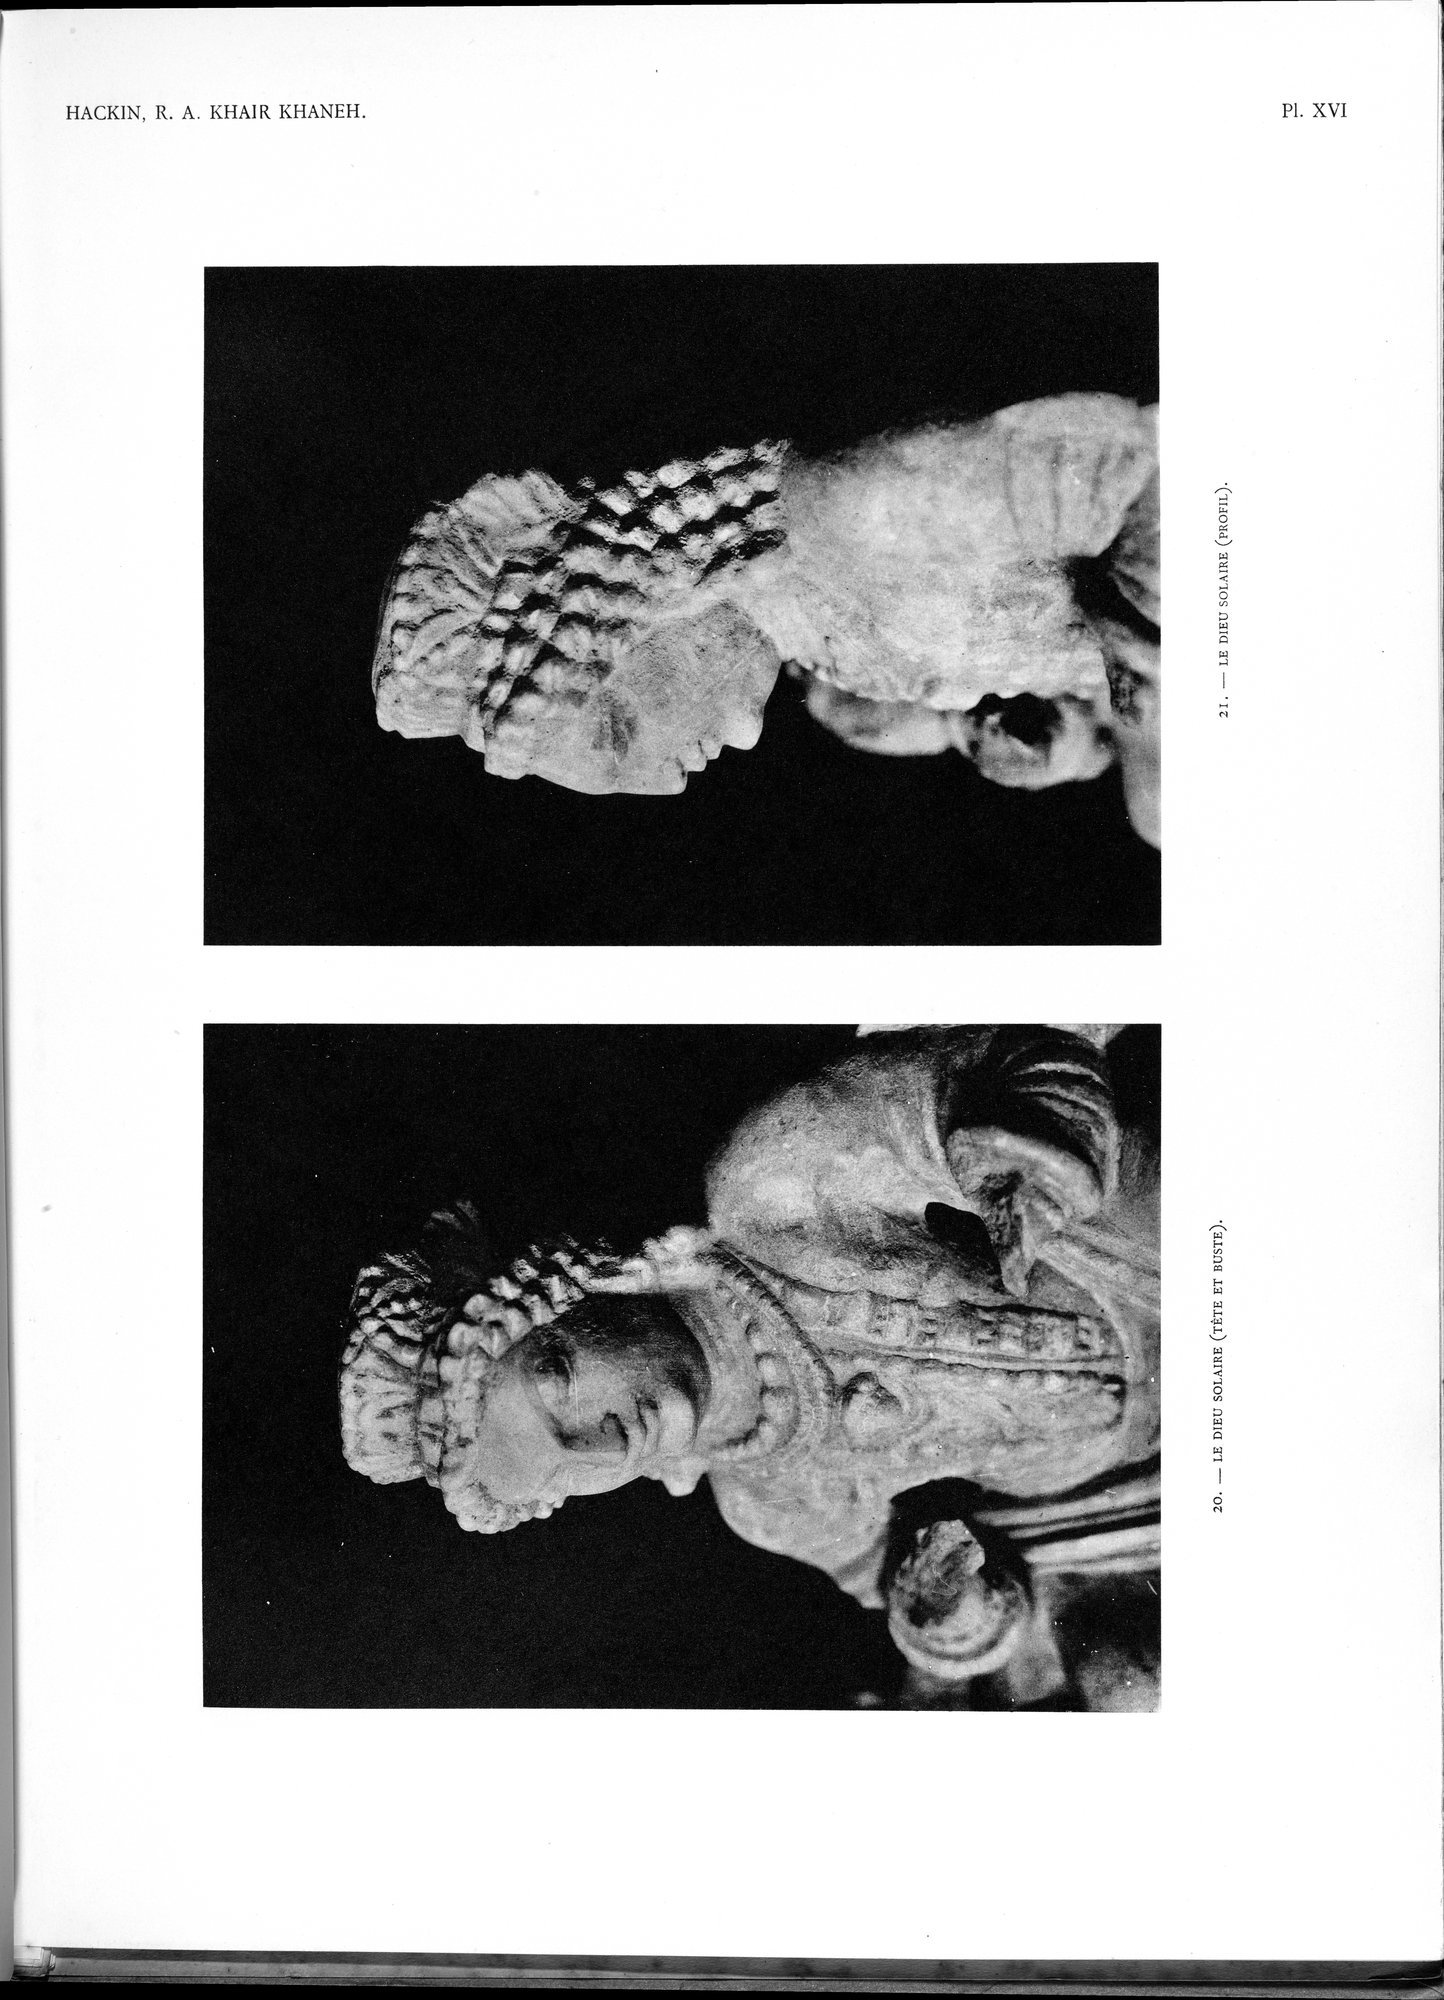 Recherches Archéologiques au Col de Khair khaneh près de Kābul : vol.1 / Page 81 (Grayscale High Resolution Image)